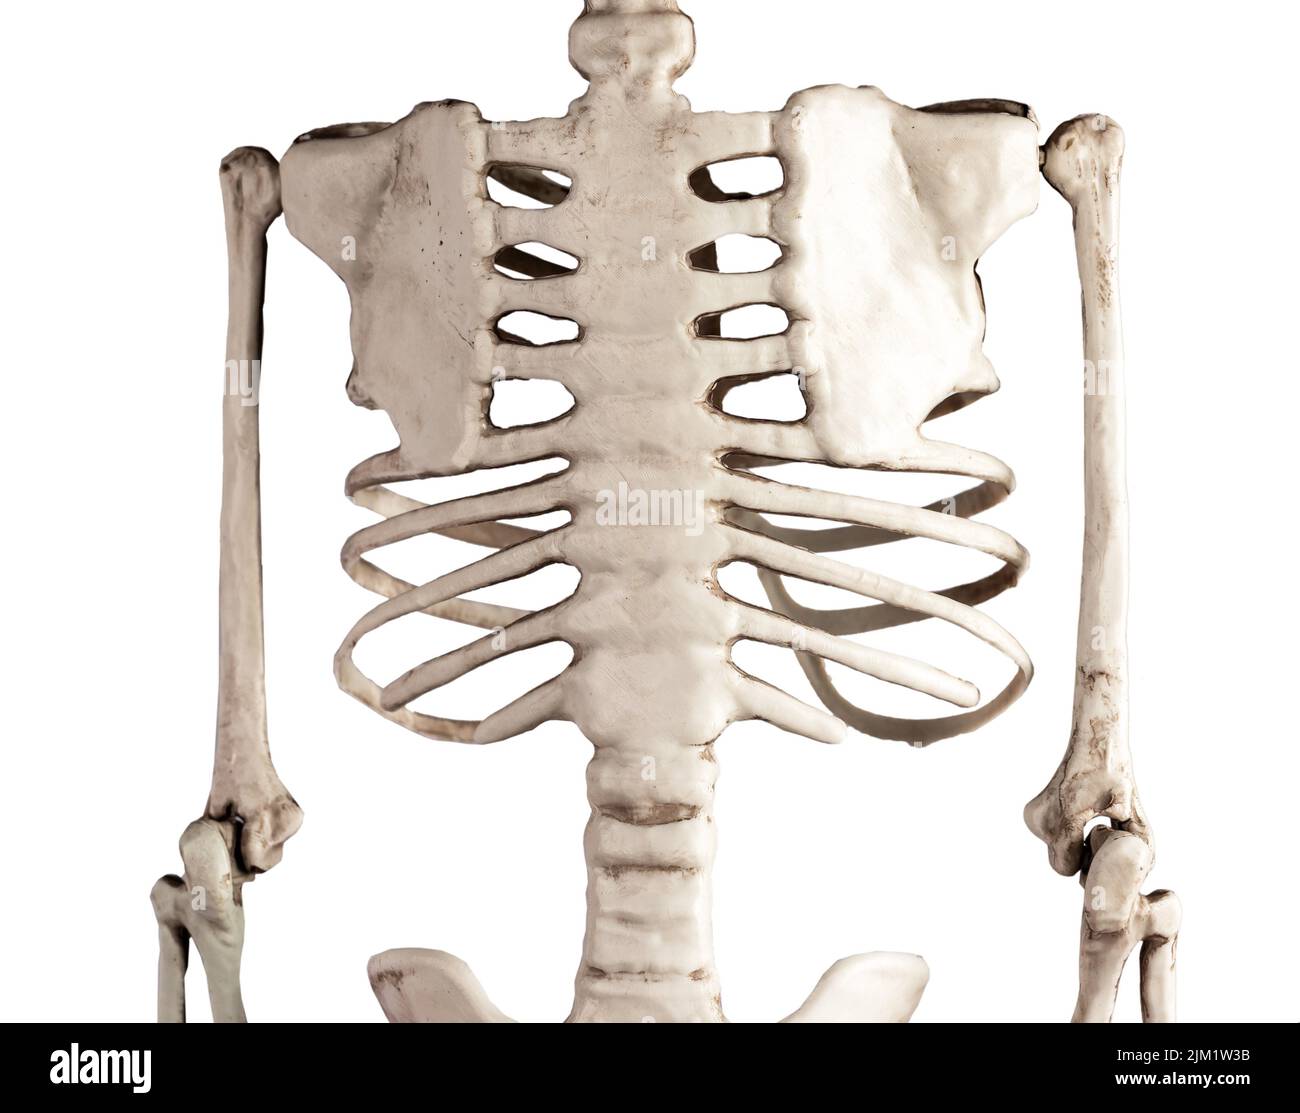 Menschliche Skelett Brustknochen isoliert auf weißem Hintergrund. Rückansicht. Brustkorb, Wirbelsäule, Schulterblatt. Anatomie des Skelettsystems, Körperstruktur, Wissenschaft, Medizinkonzept. Hochwertige Fotos Stockfoto